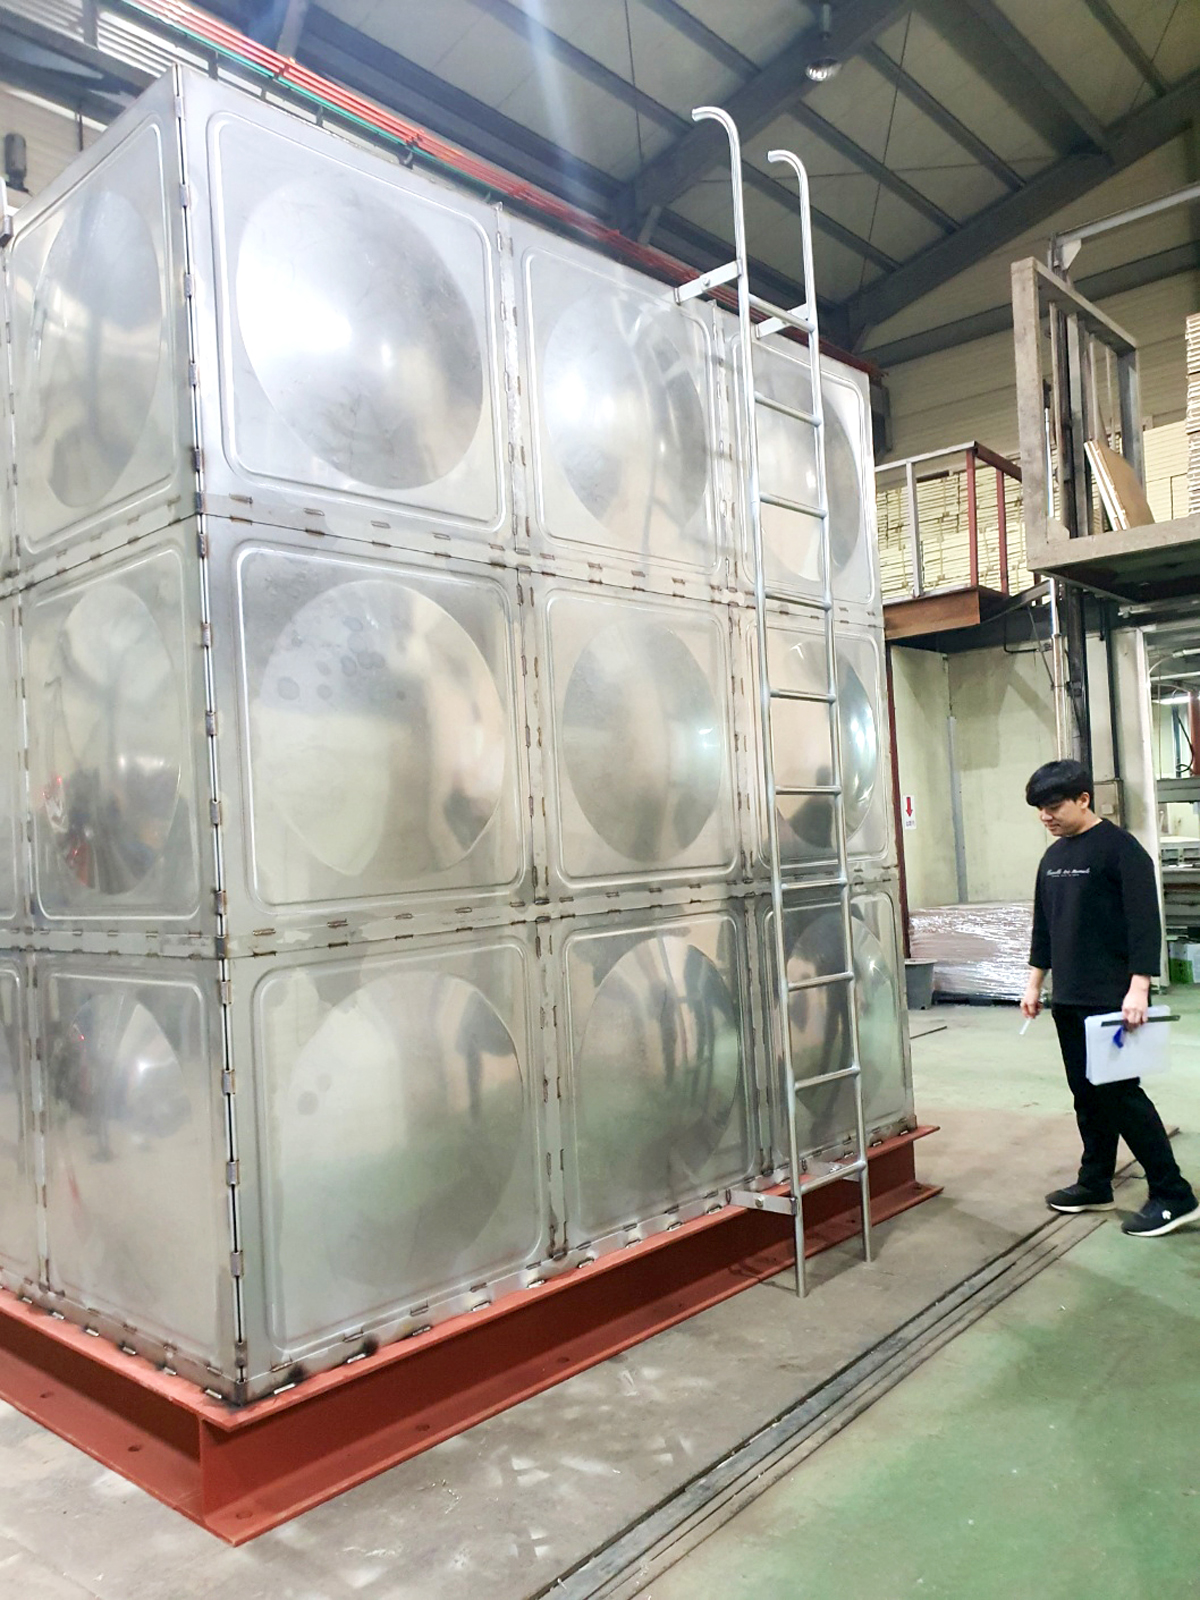 한국탱크공업협동조합이 내진설계 법제화에 맞춰 제작한 스테인리스 패널형 물탱크의 모습.